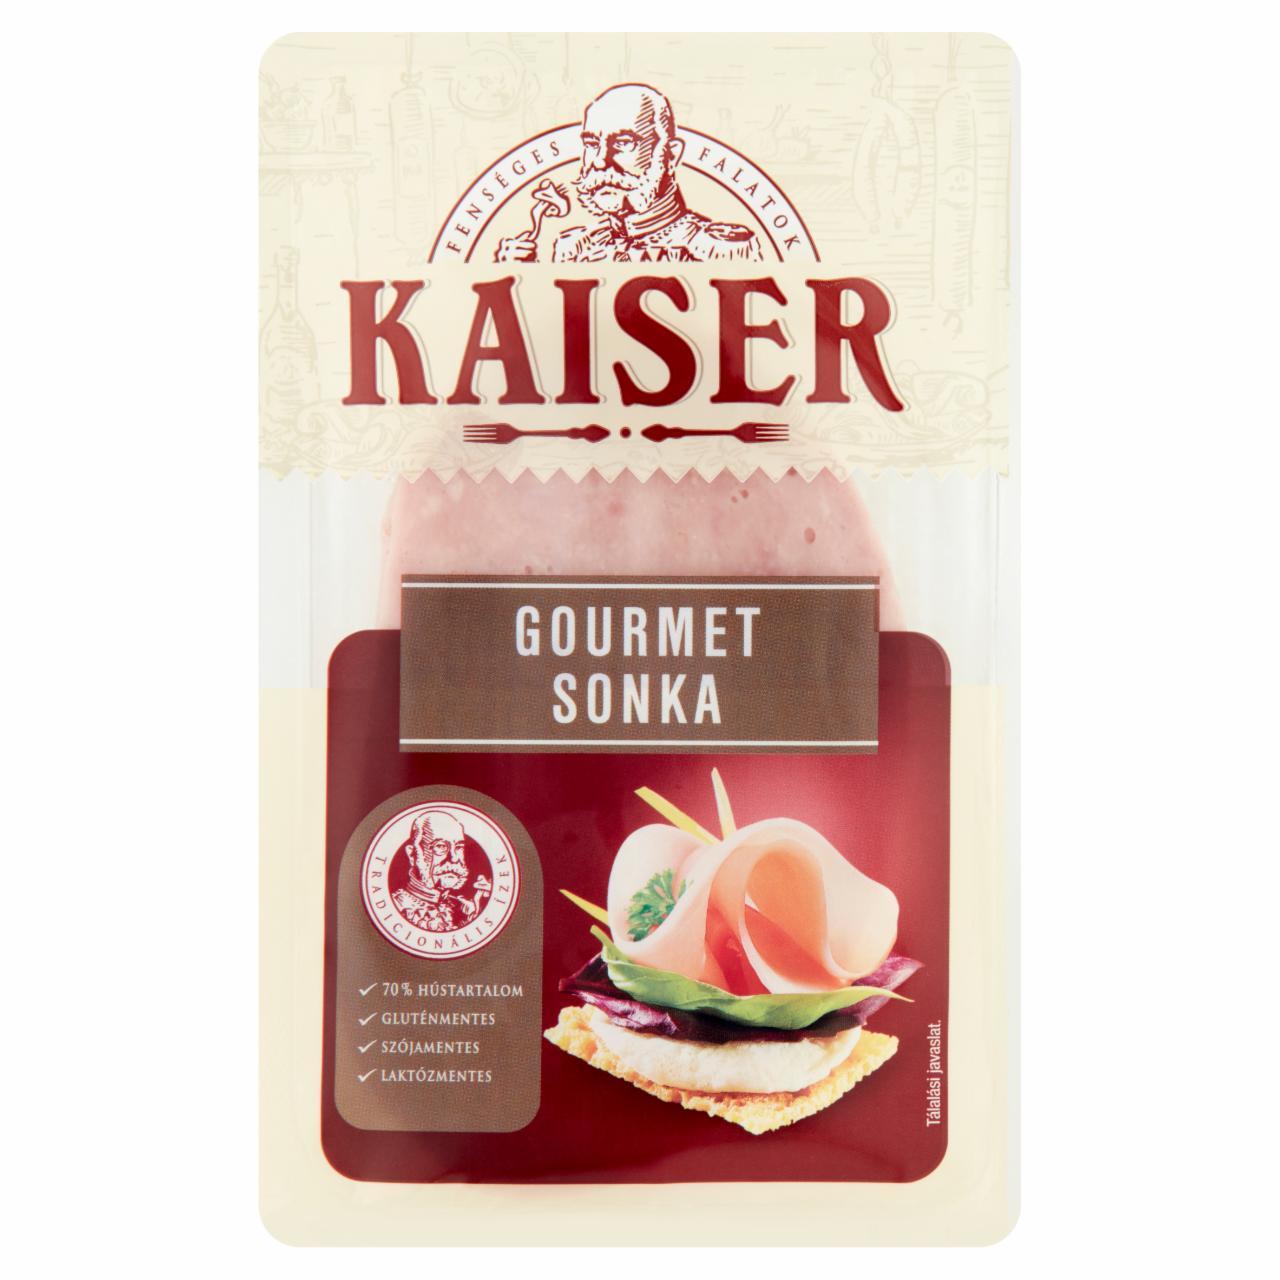 Képek - Kaiser szeletelt Gourmet sonka 100 g